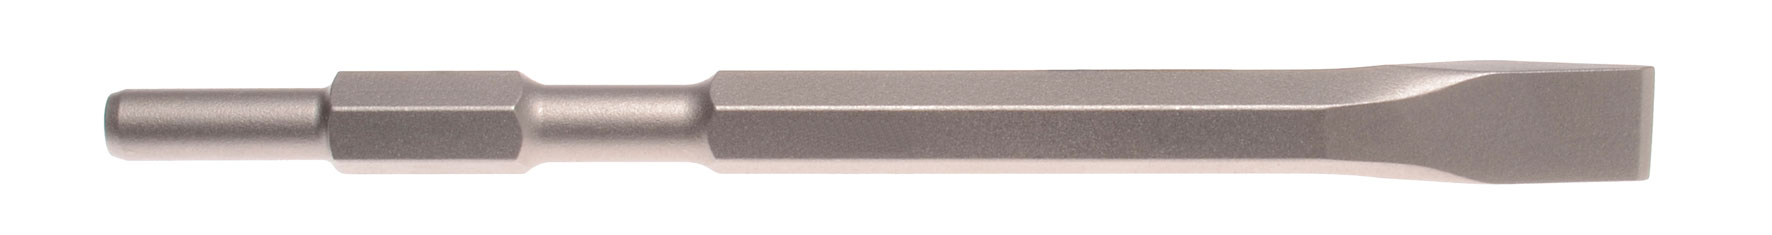 Flachmeißel Schaft 21 mm 6-kant